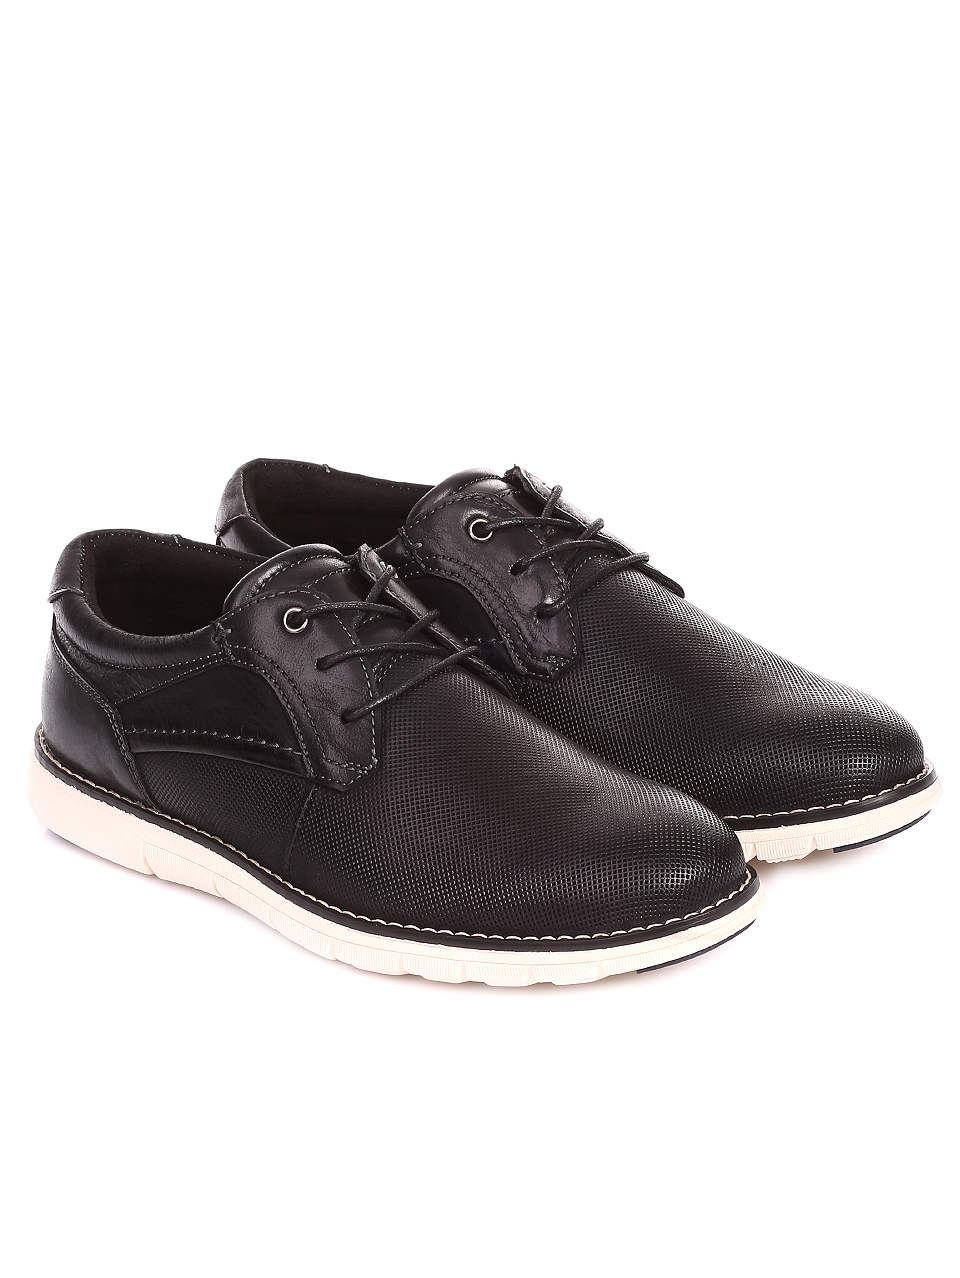 Ежедневни мъжки обувки от естествена кожа 7X-20246 black